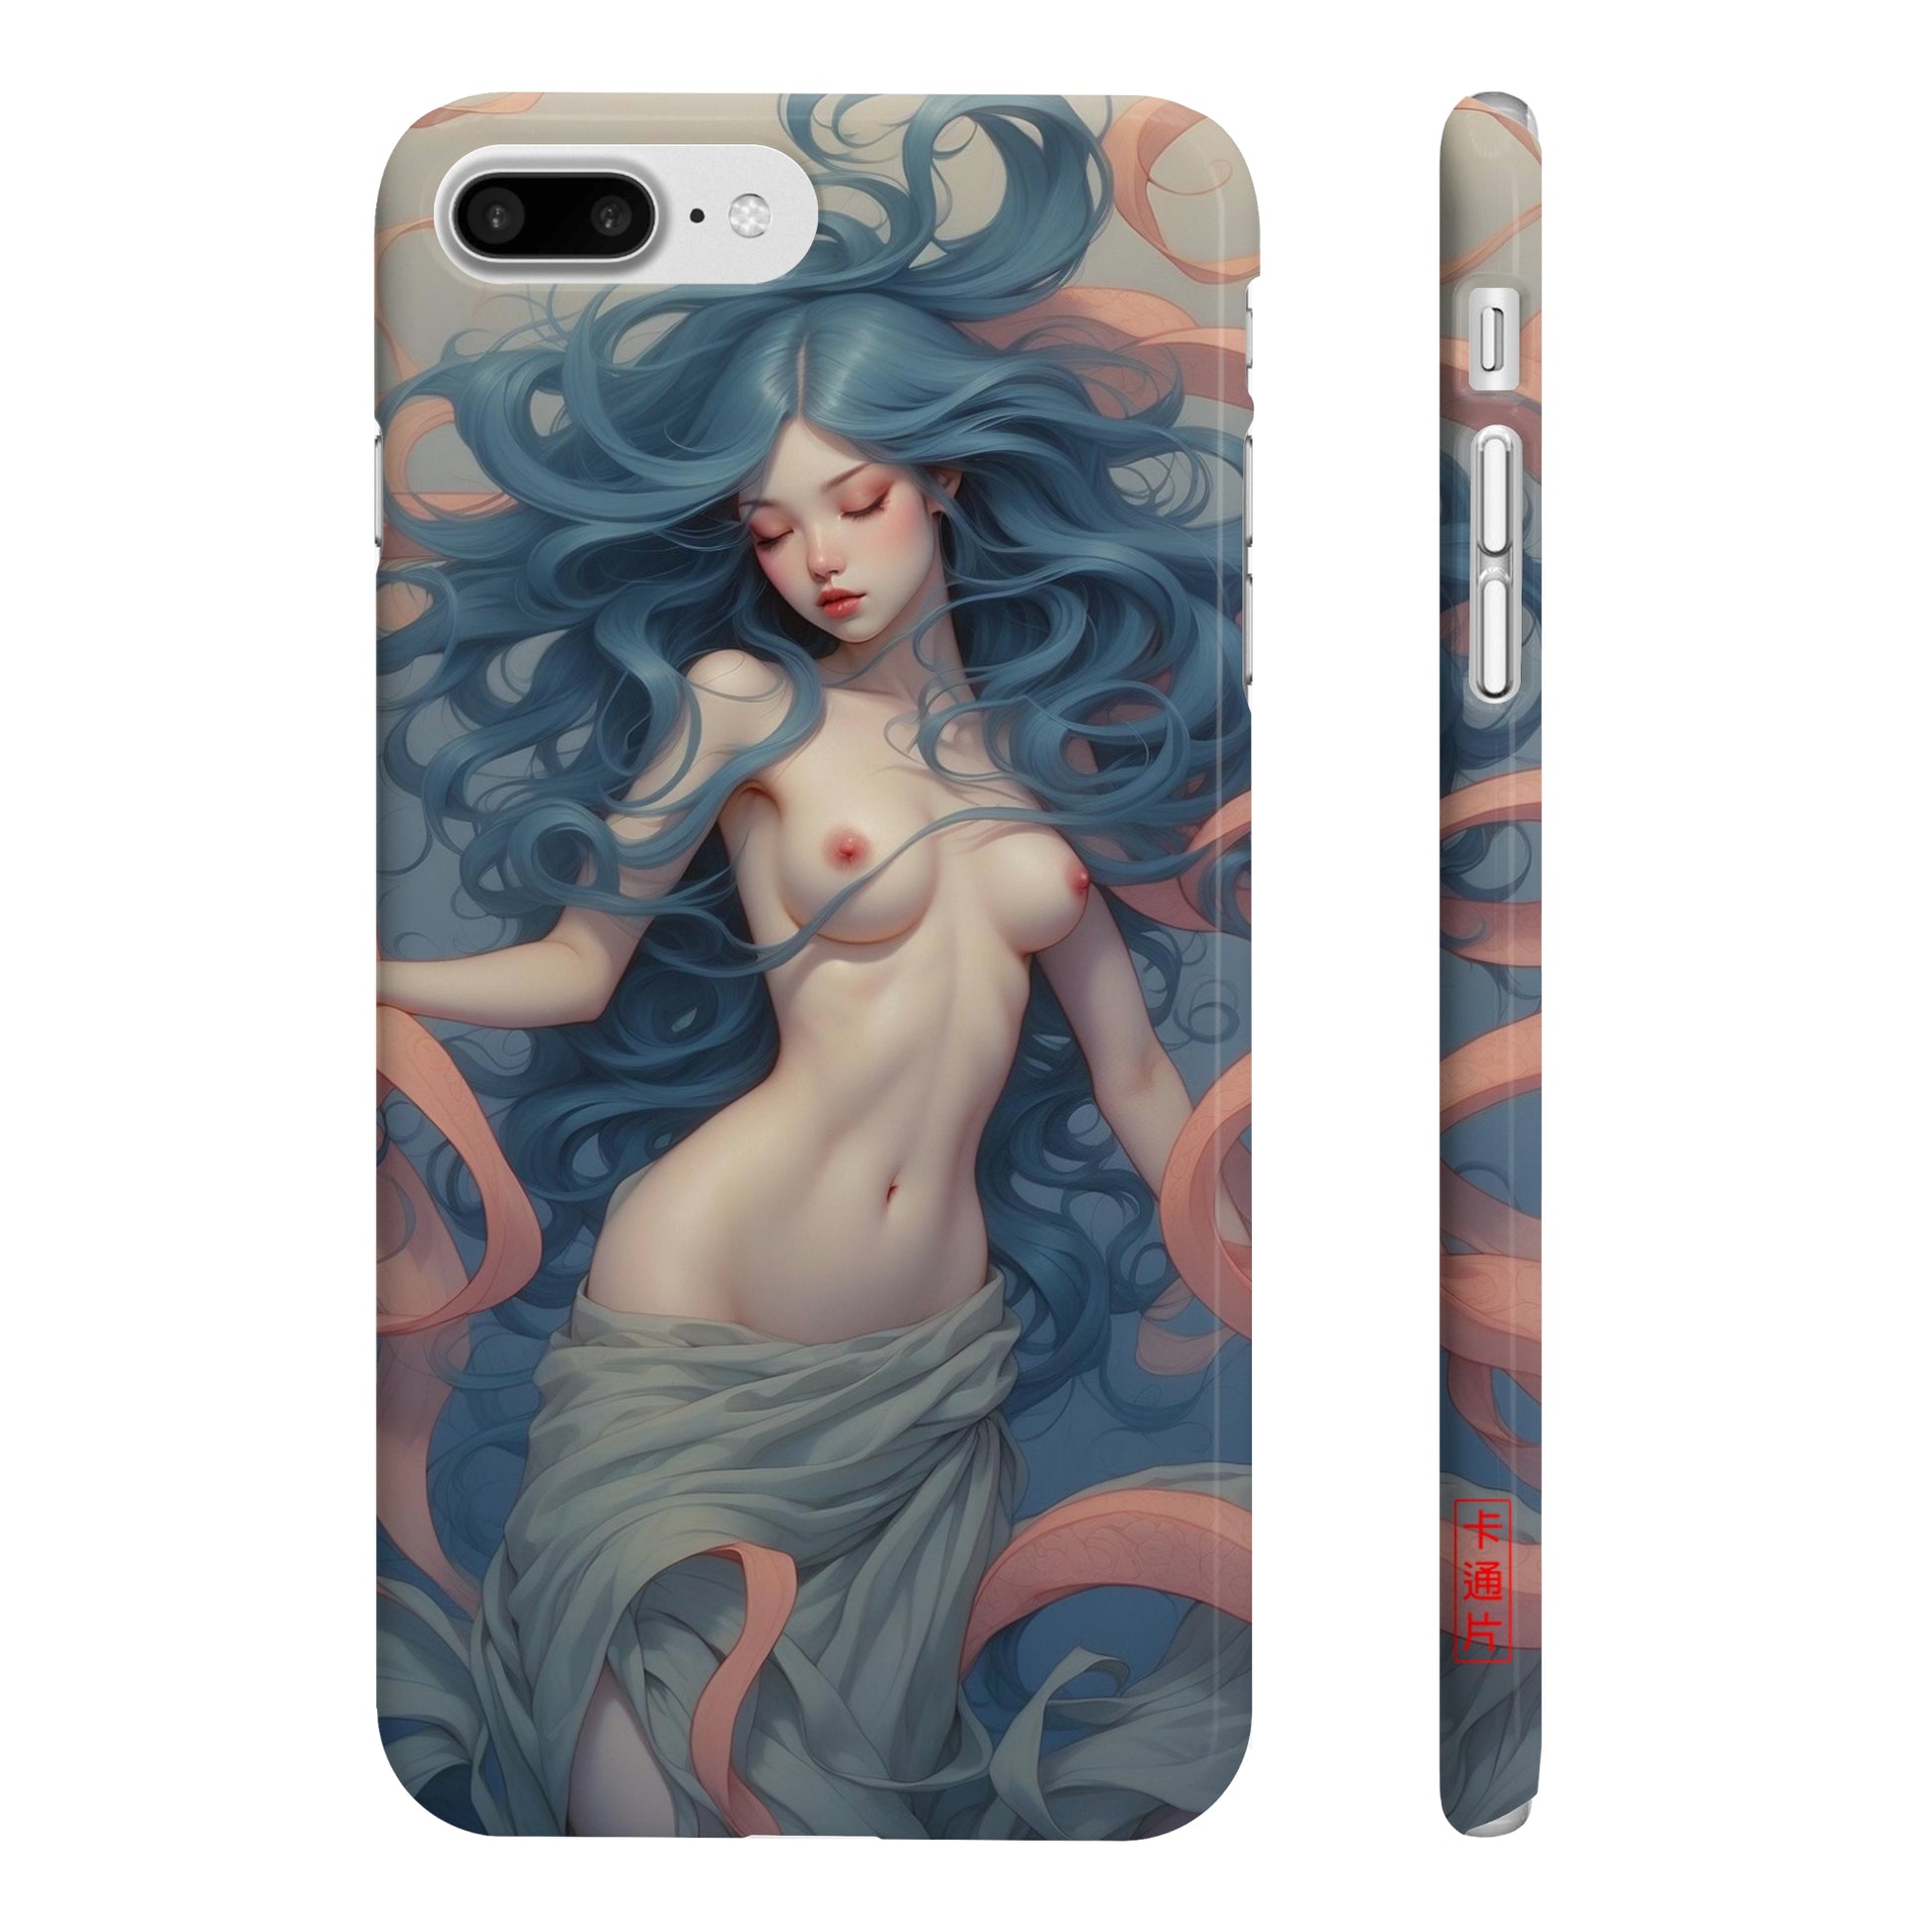 Kǎtōng Piàn - Mermaid Collection - 057 - Slim Phone Cases Printify